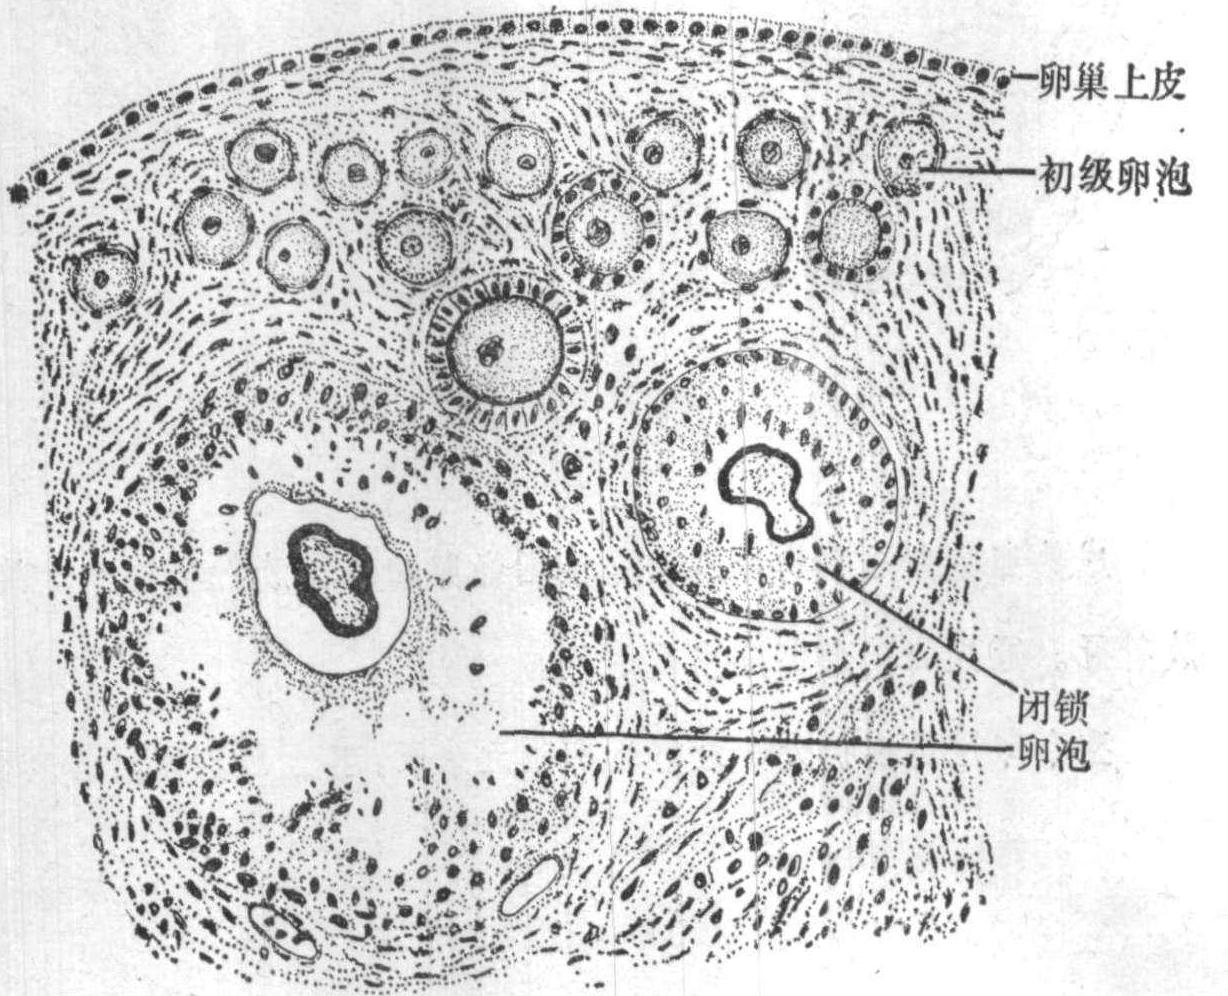 图416 初级卵泡-人体解剖组织学-医学